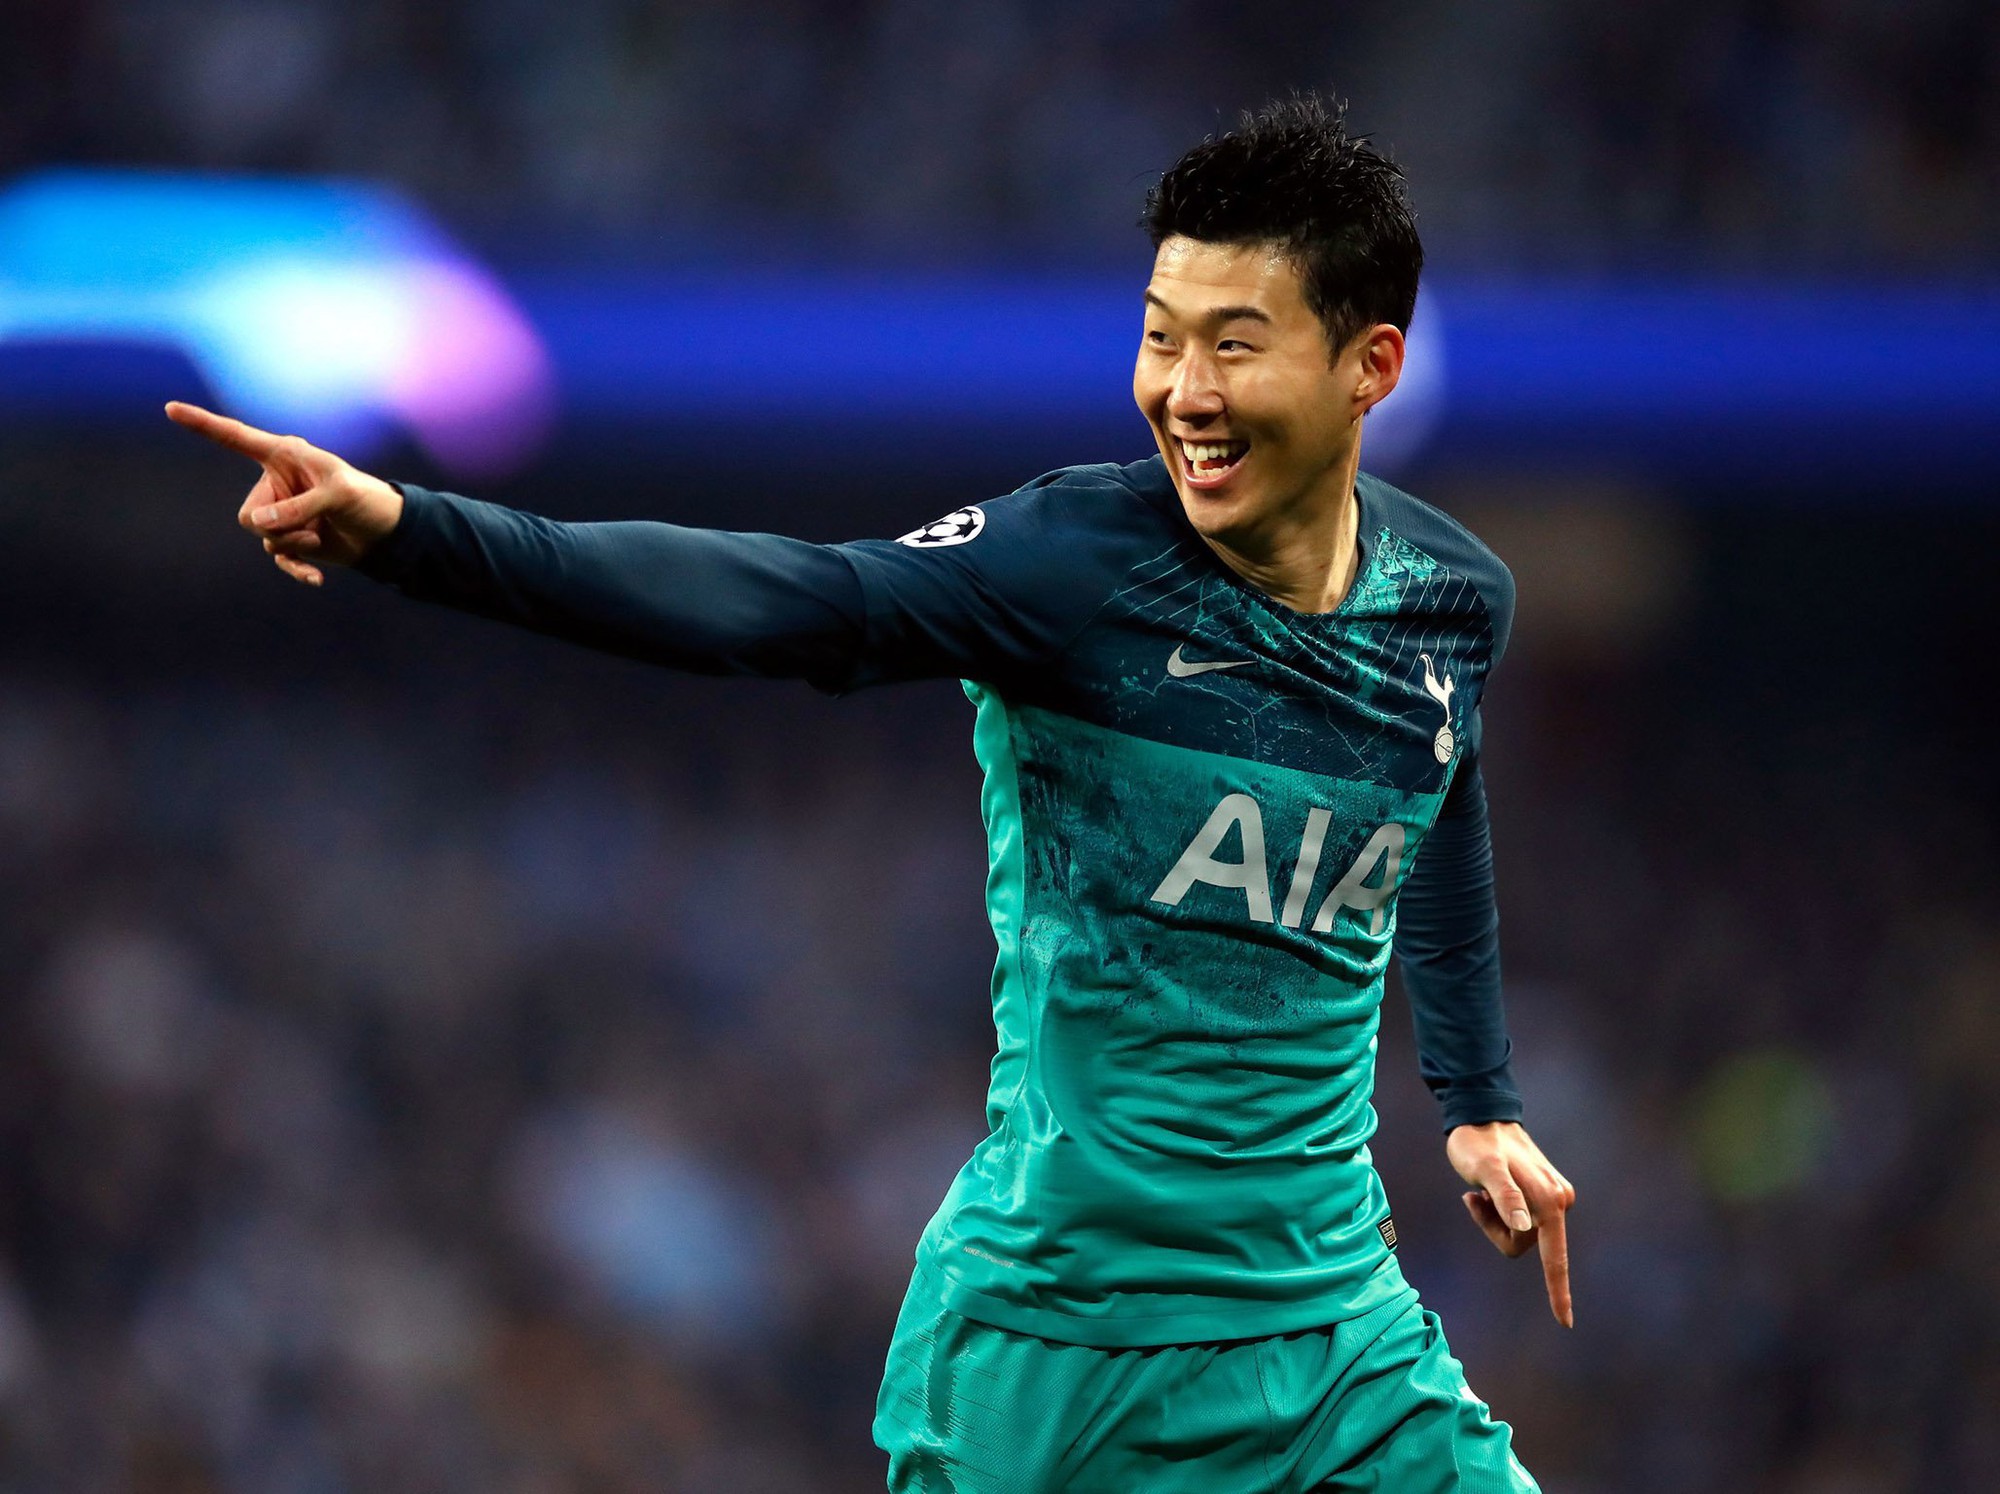 Hành trình tới chung kết Champions League của Son Heung-min và đồng đội: Xứng đáng với danh hiệu chân mệnh thiên tử sau 3 lần chết đi sống lại - Ảnh 7.